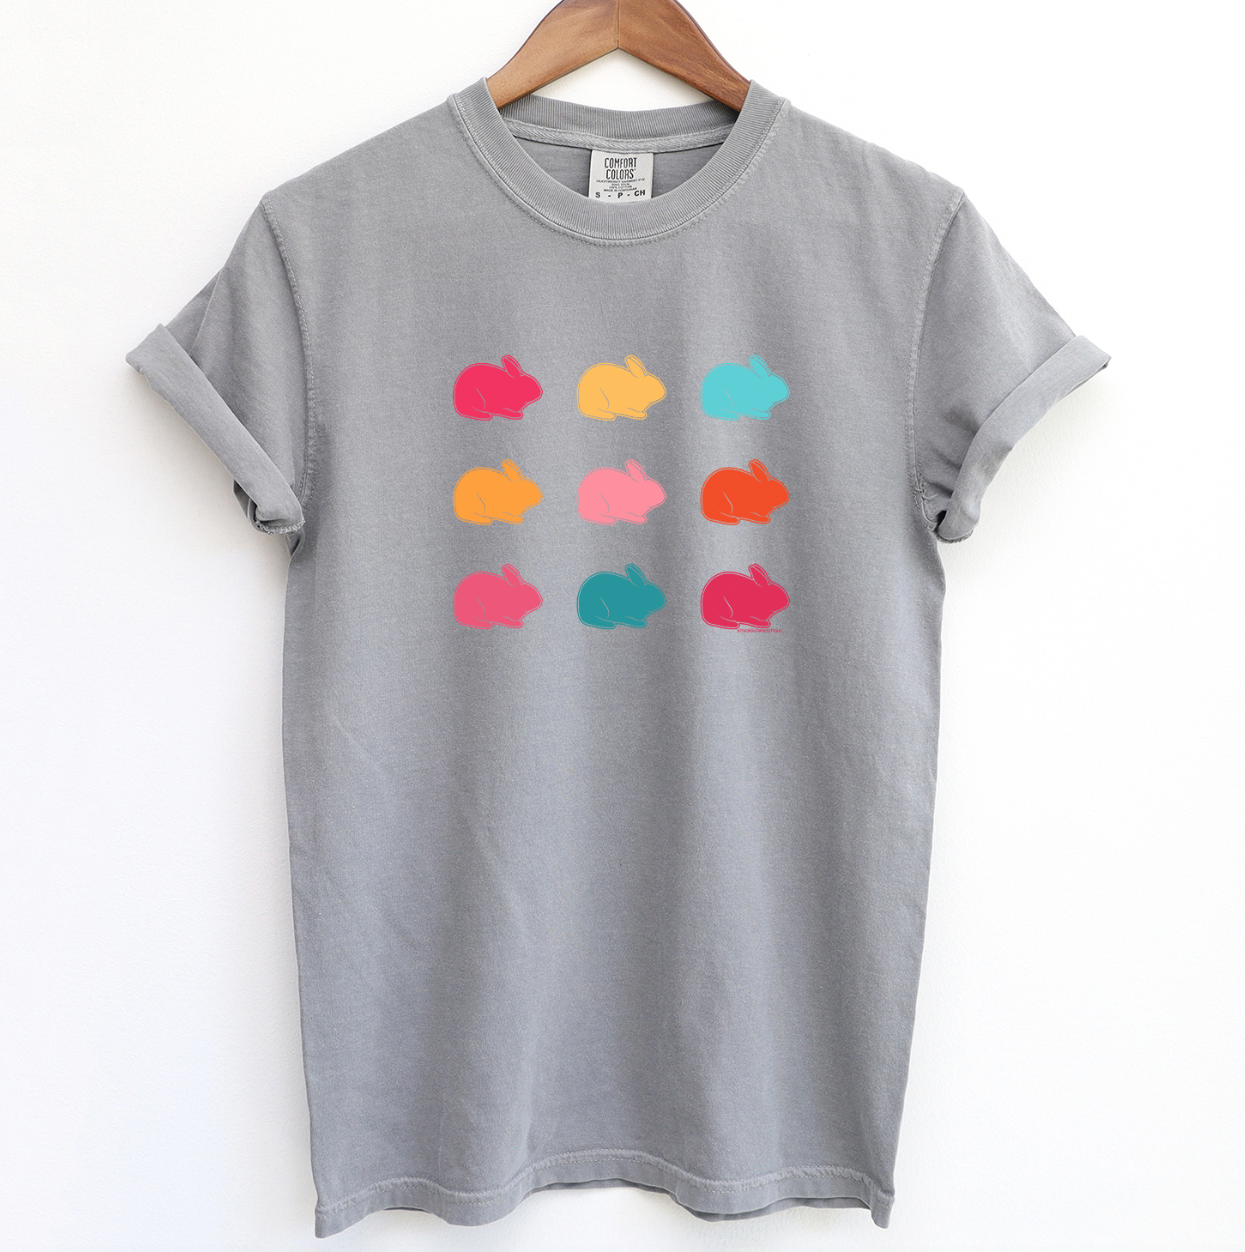 Colorful Rabbits ComfortWash/ComfortColor T-Shirt (S-4XL) - Multiple Colors!